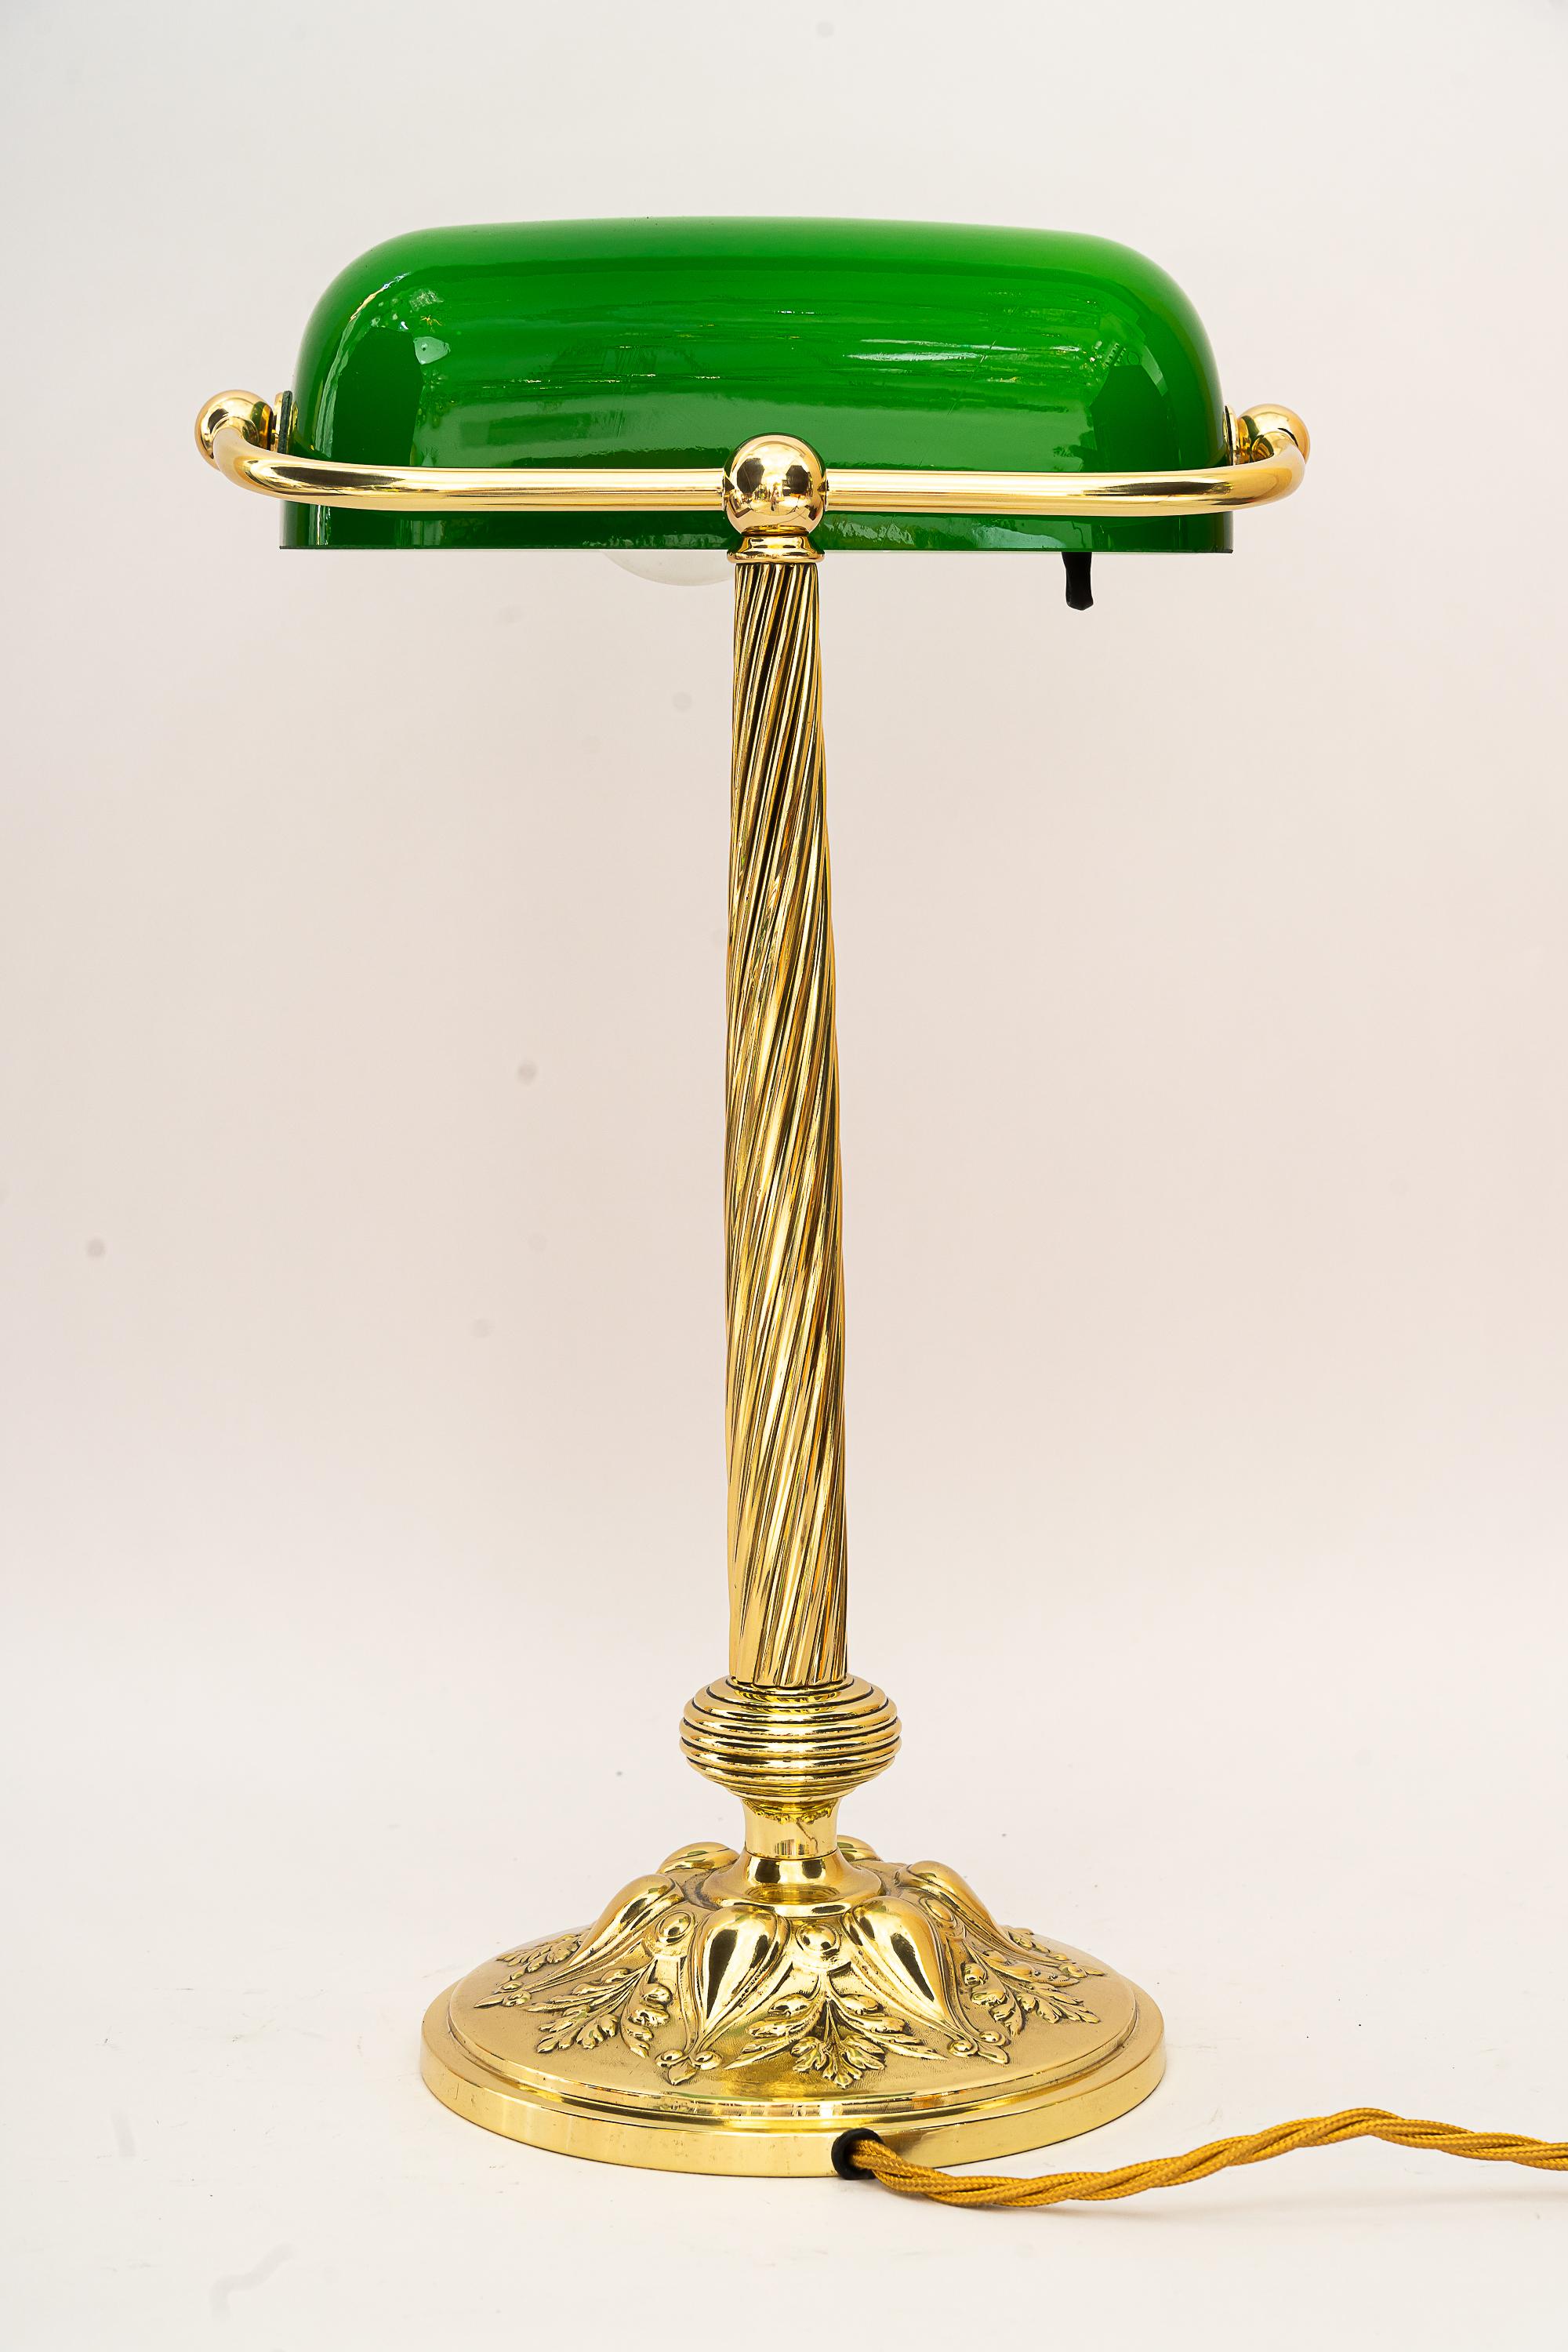 Lampe de banque réglable datant des années 1920
Laiton poli et émaillé au four